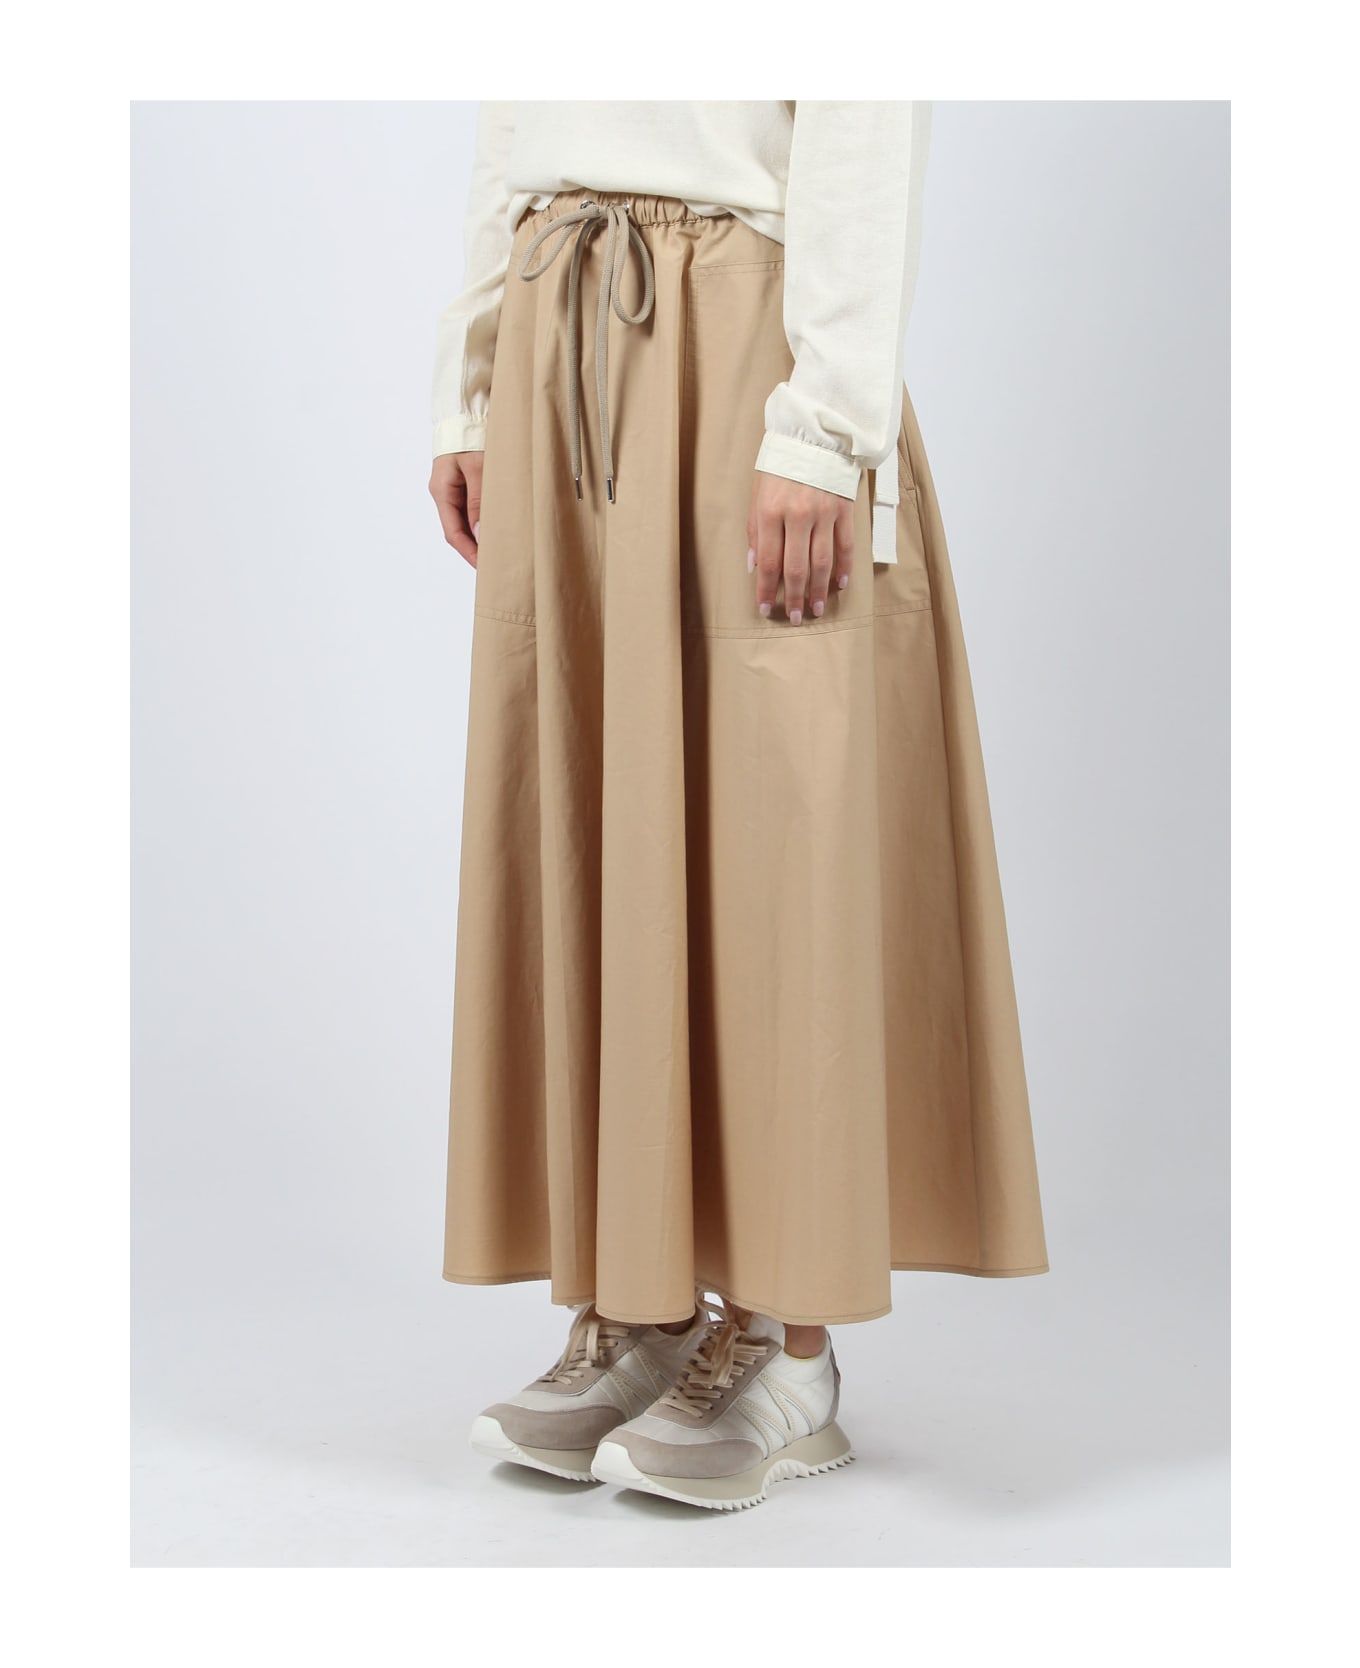 Moncler Poplin Maxi Skirt - Nude & Neutrals